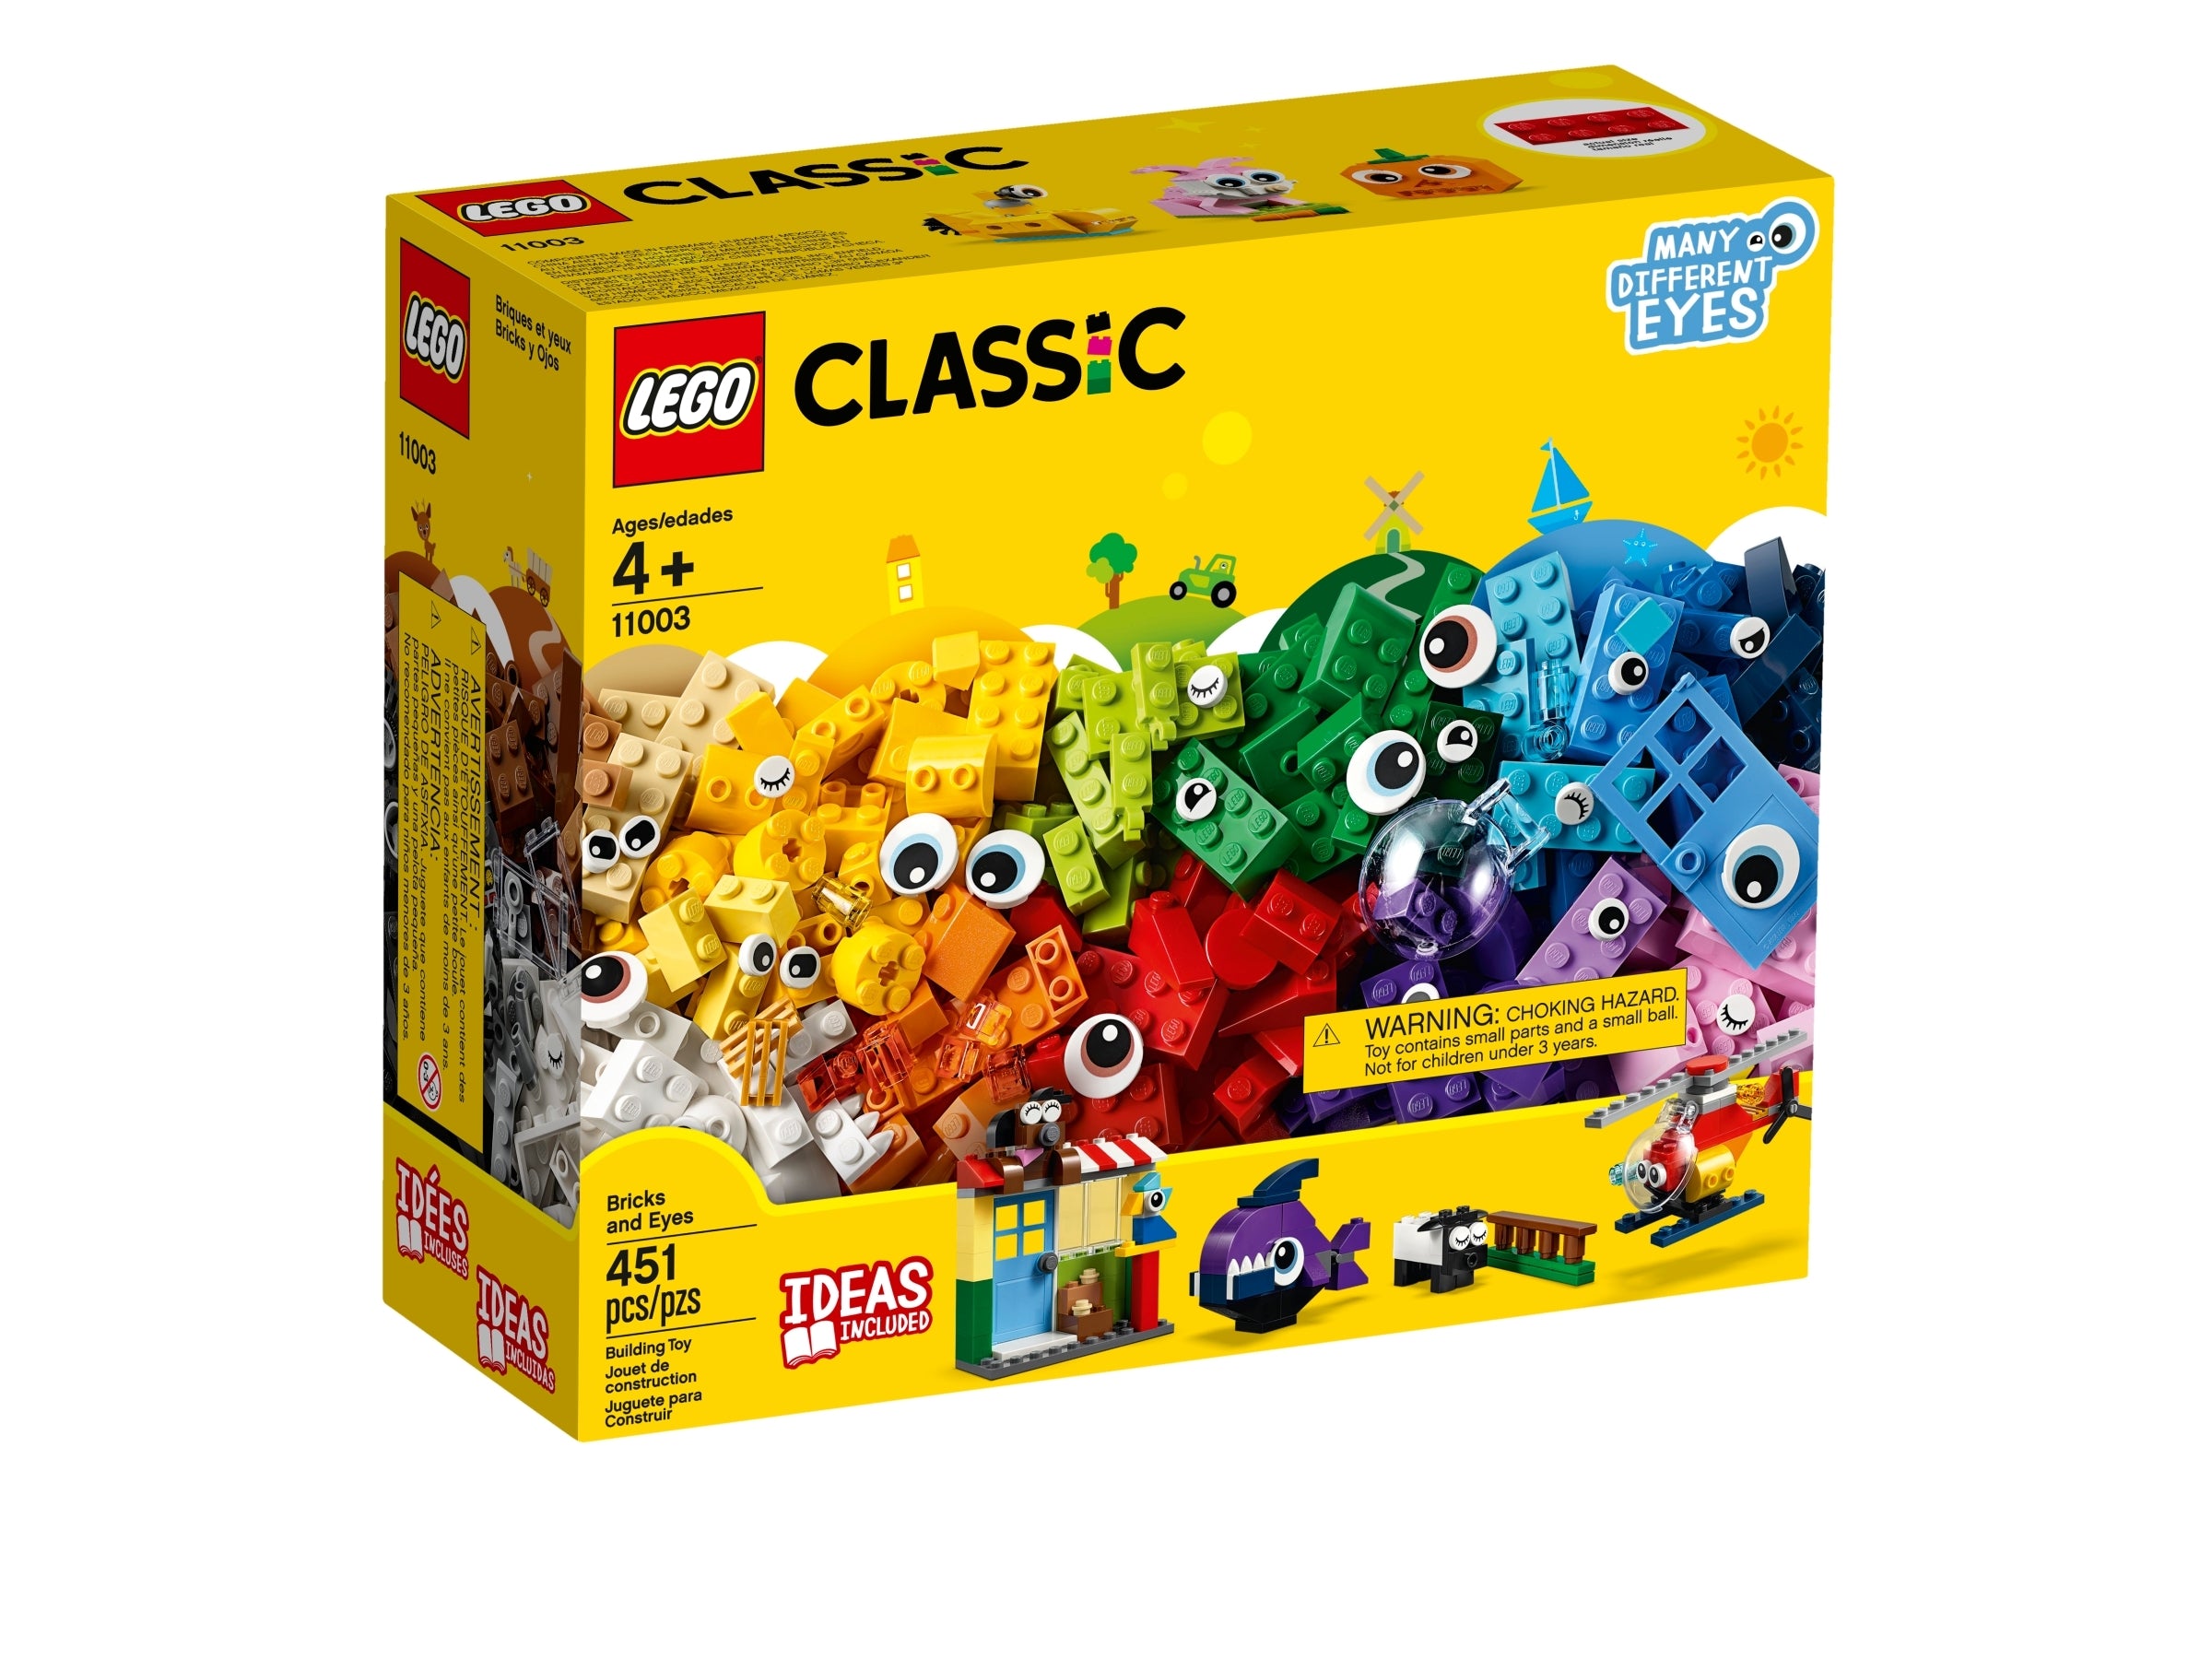 LEGO® Classic 11003 Bricks and Eyes set